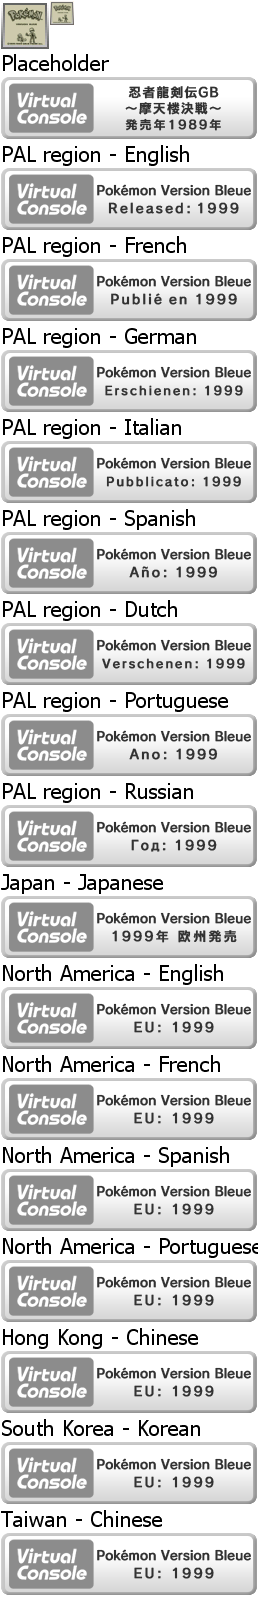 Virtual Console - Pokémon Version Bleue